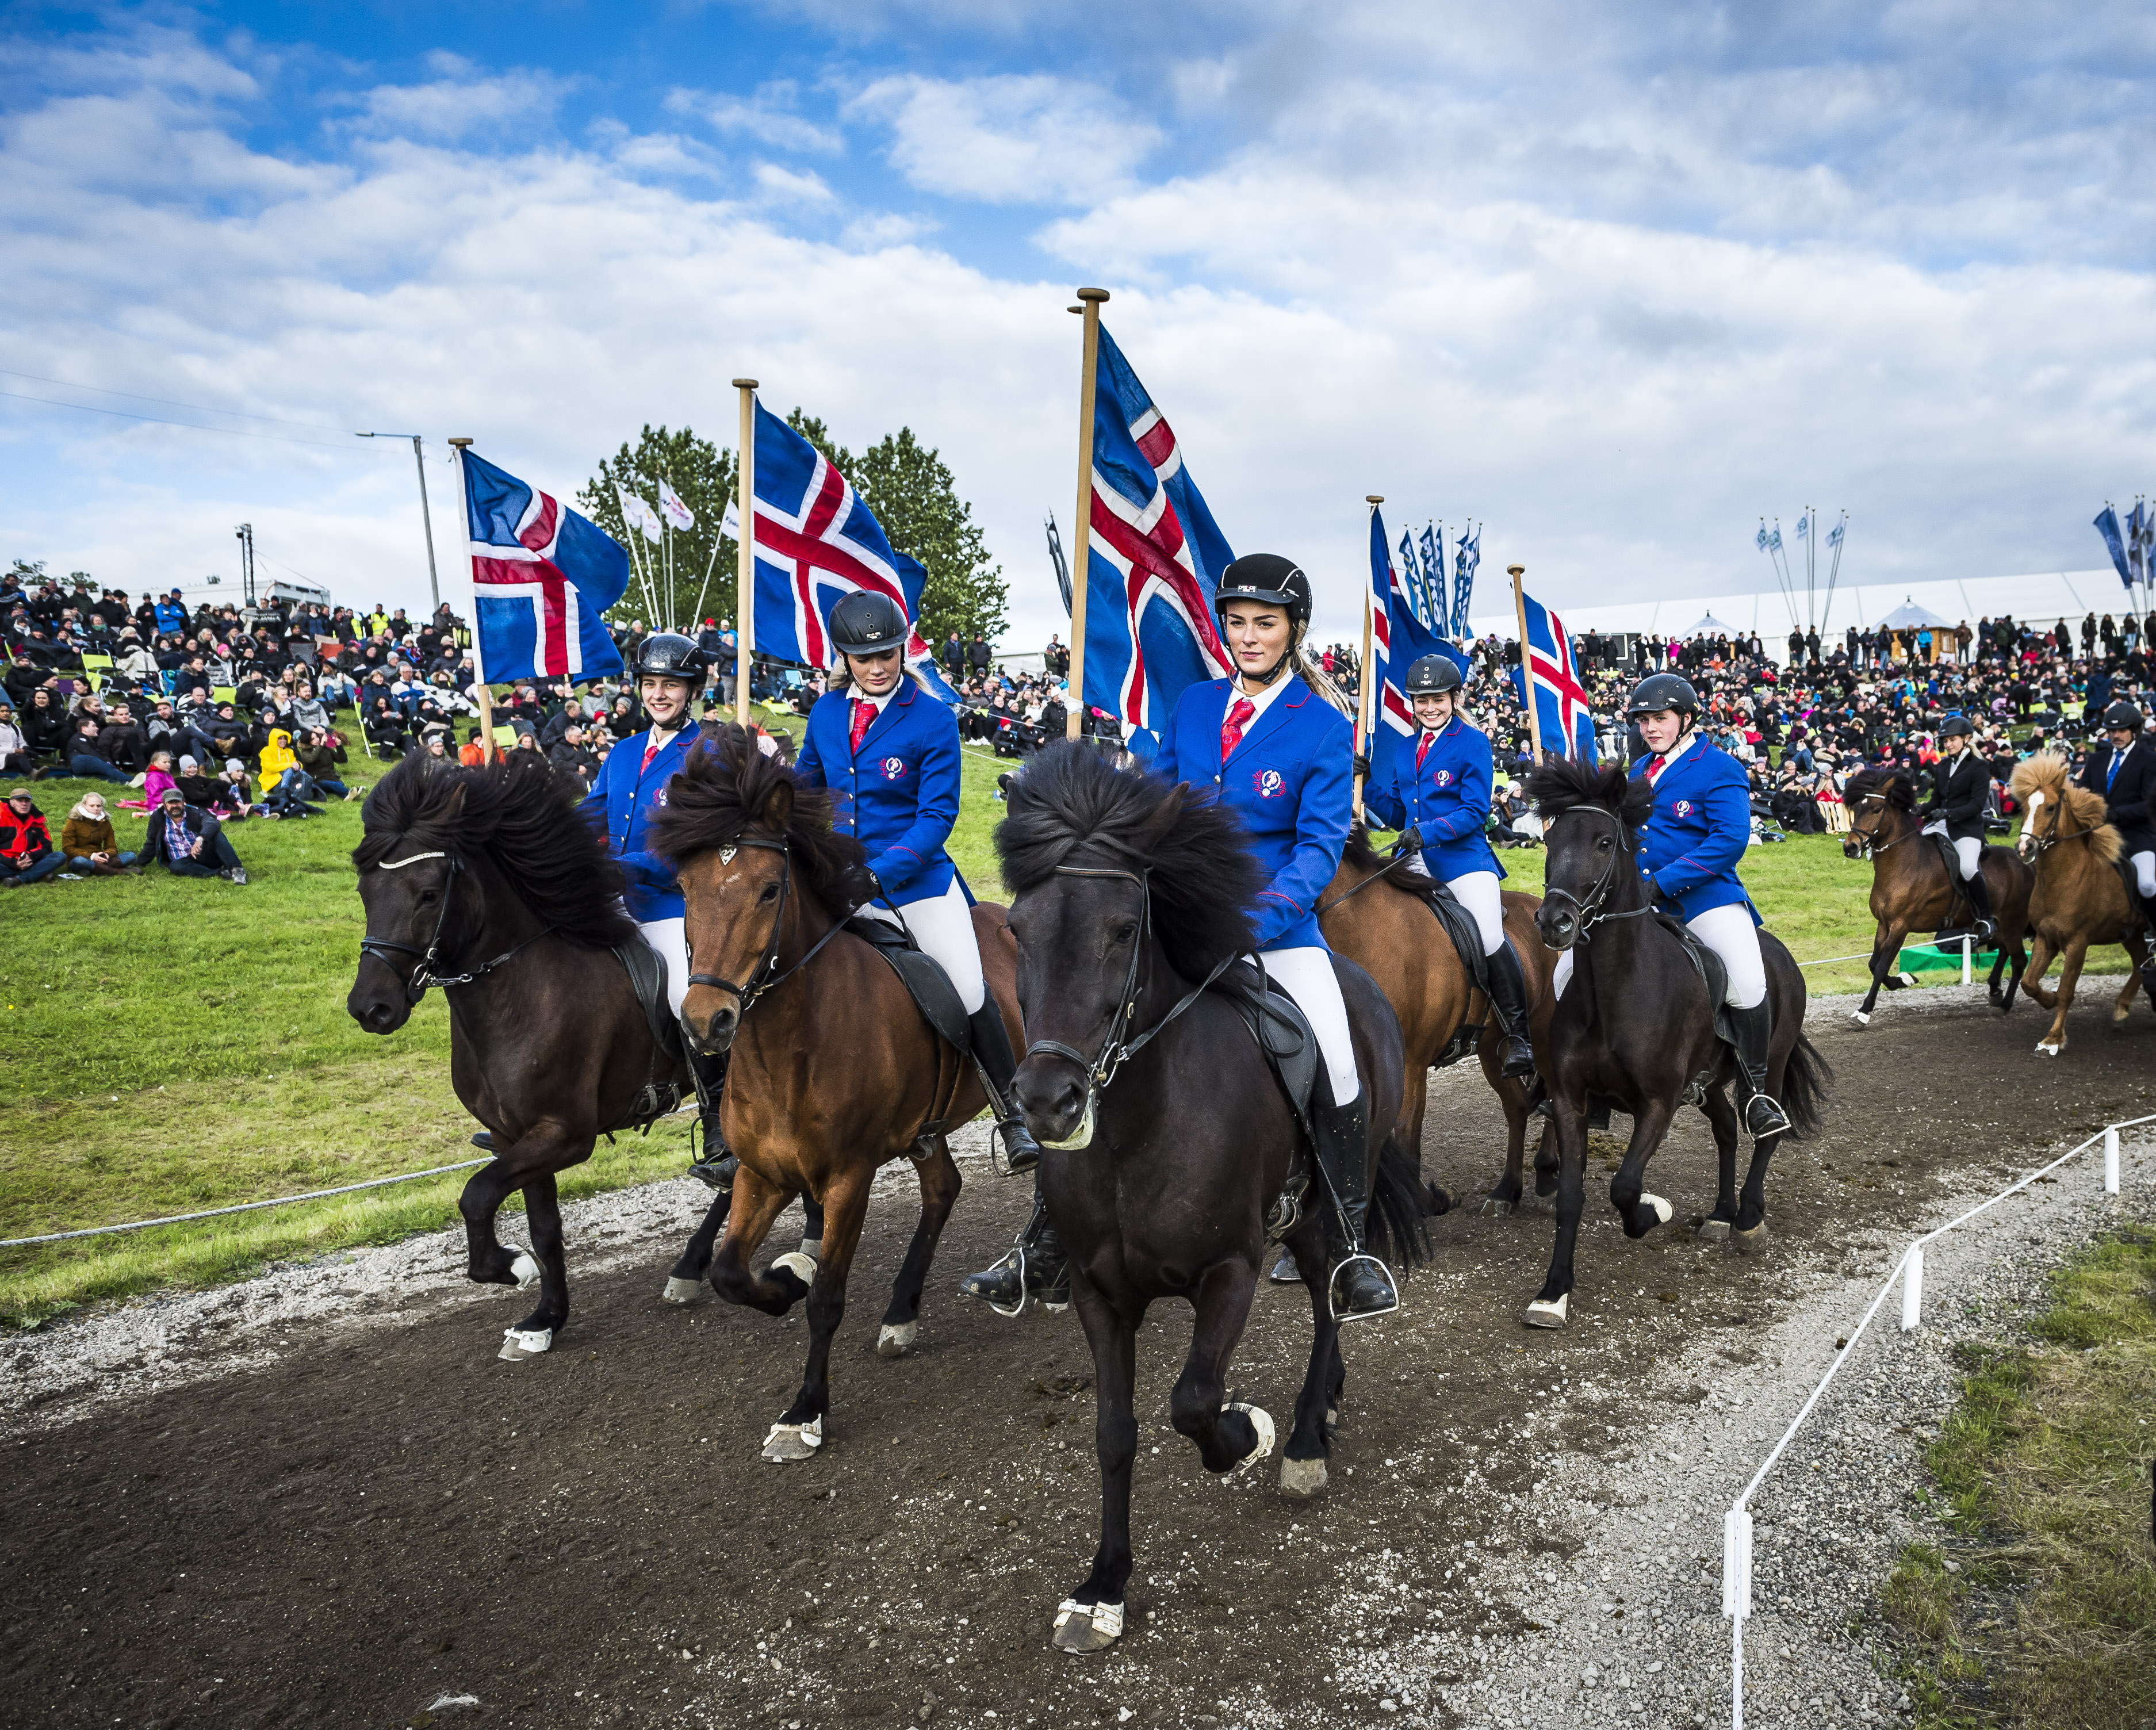 Landsmot_Horses of Iceland.jpg